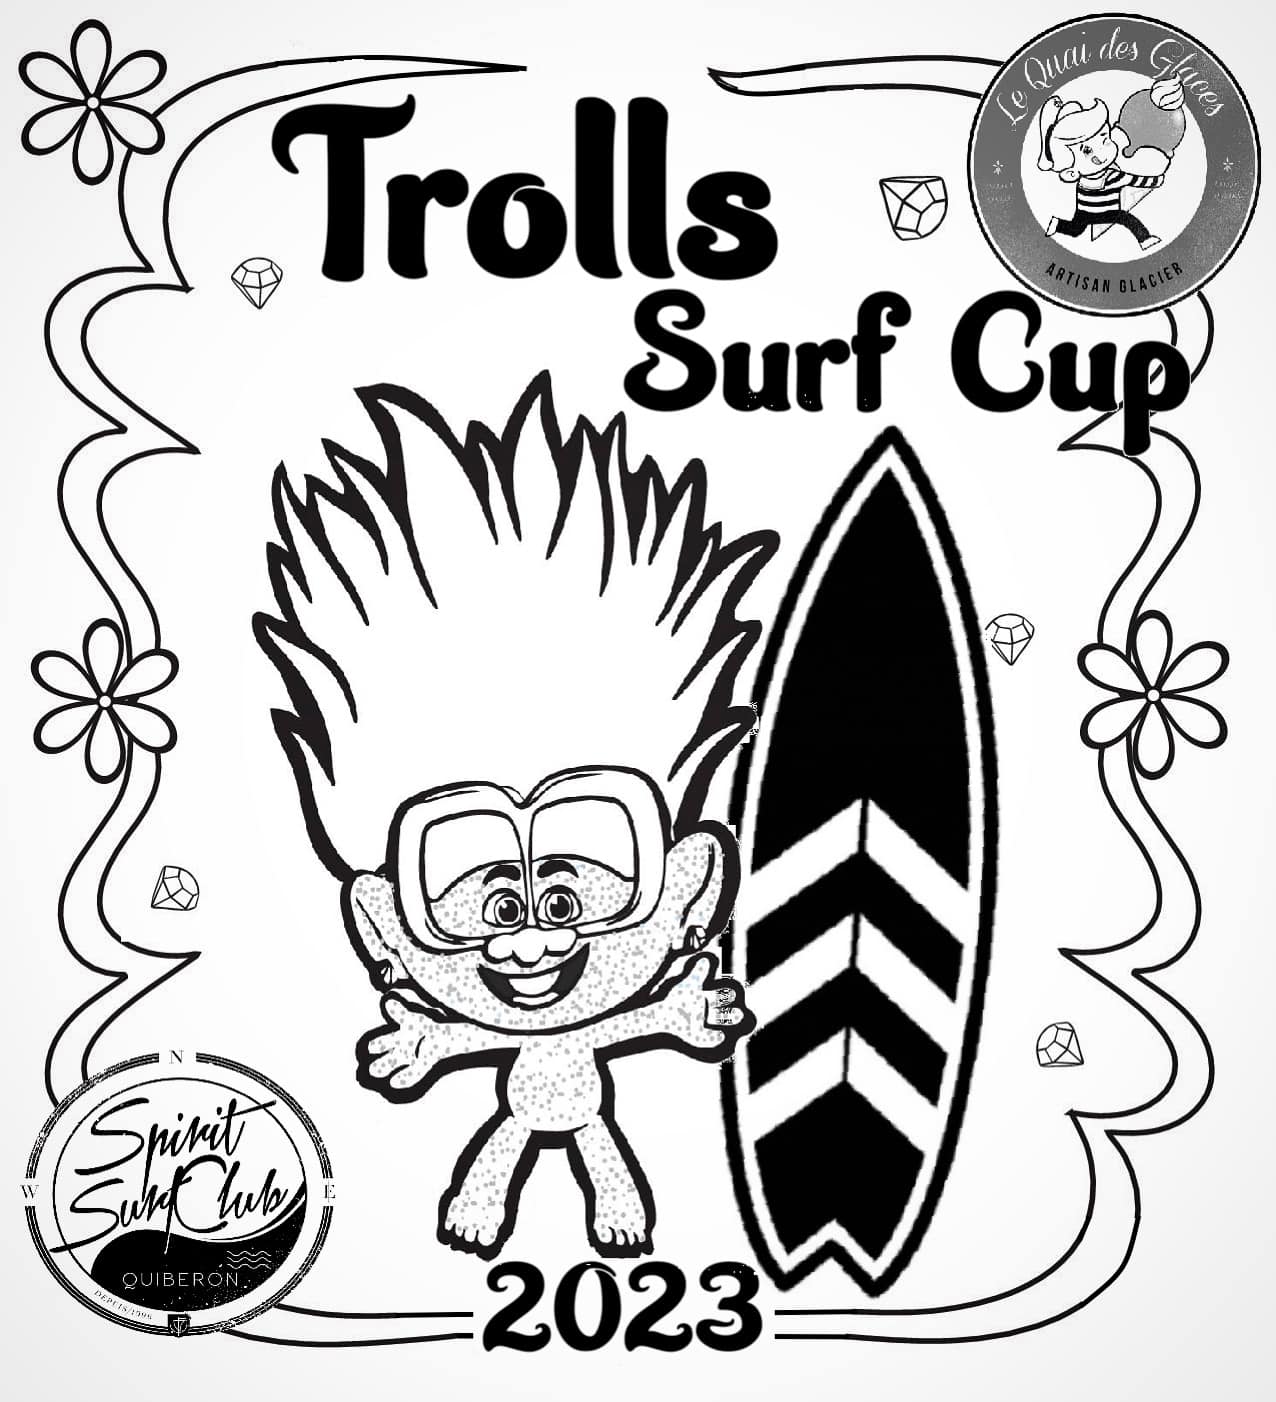 2023 – TROLLS SURF CUP – QUAI DES GLACES